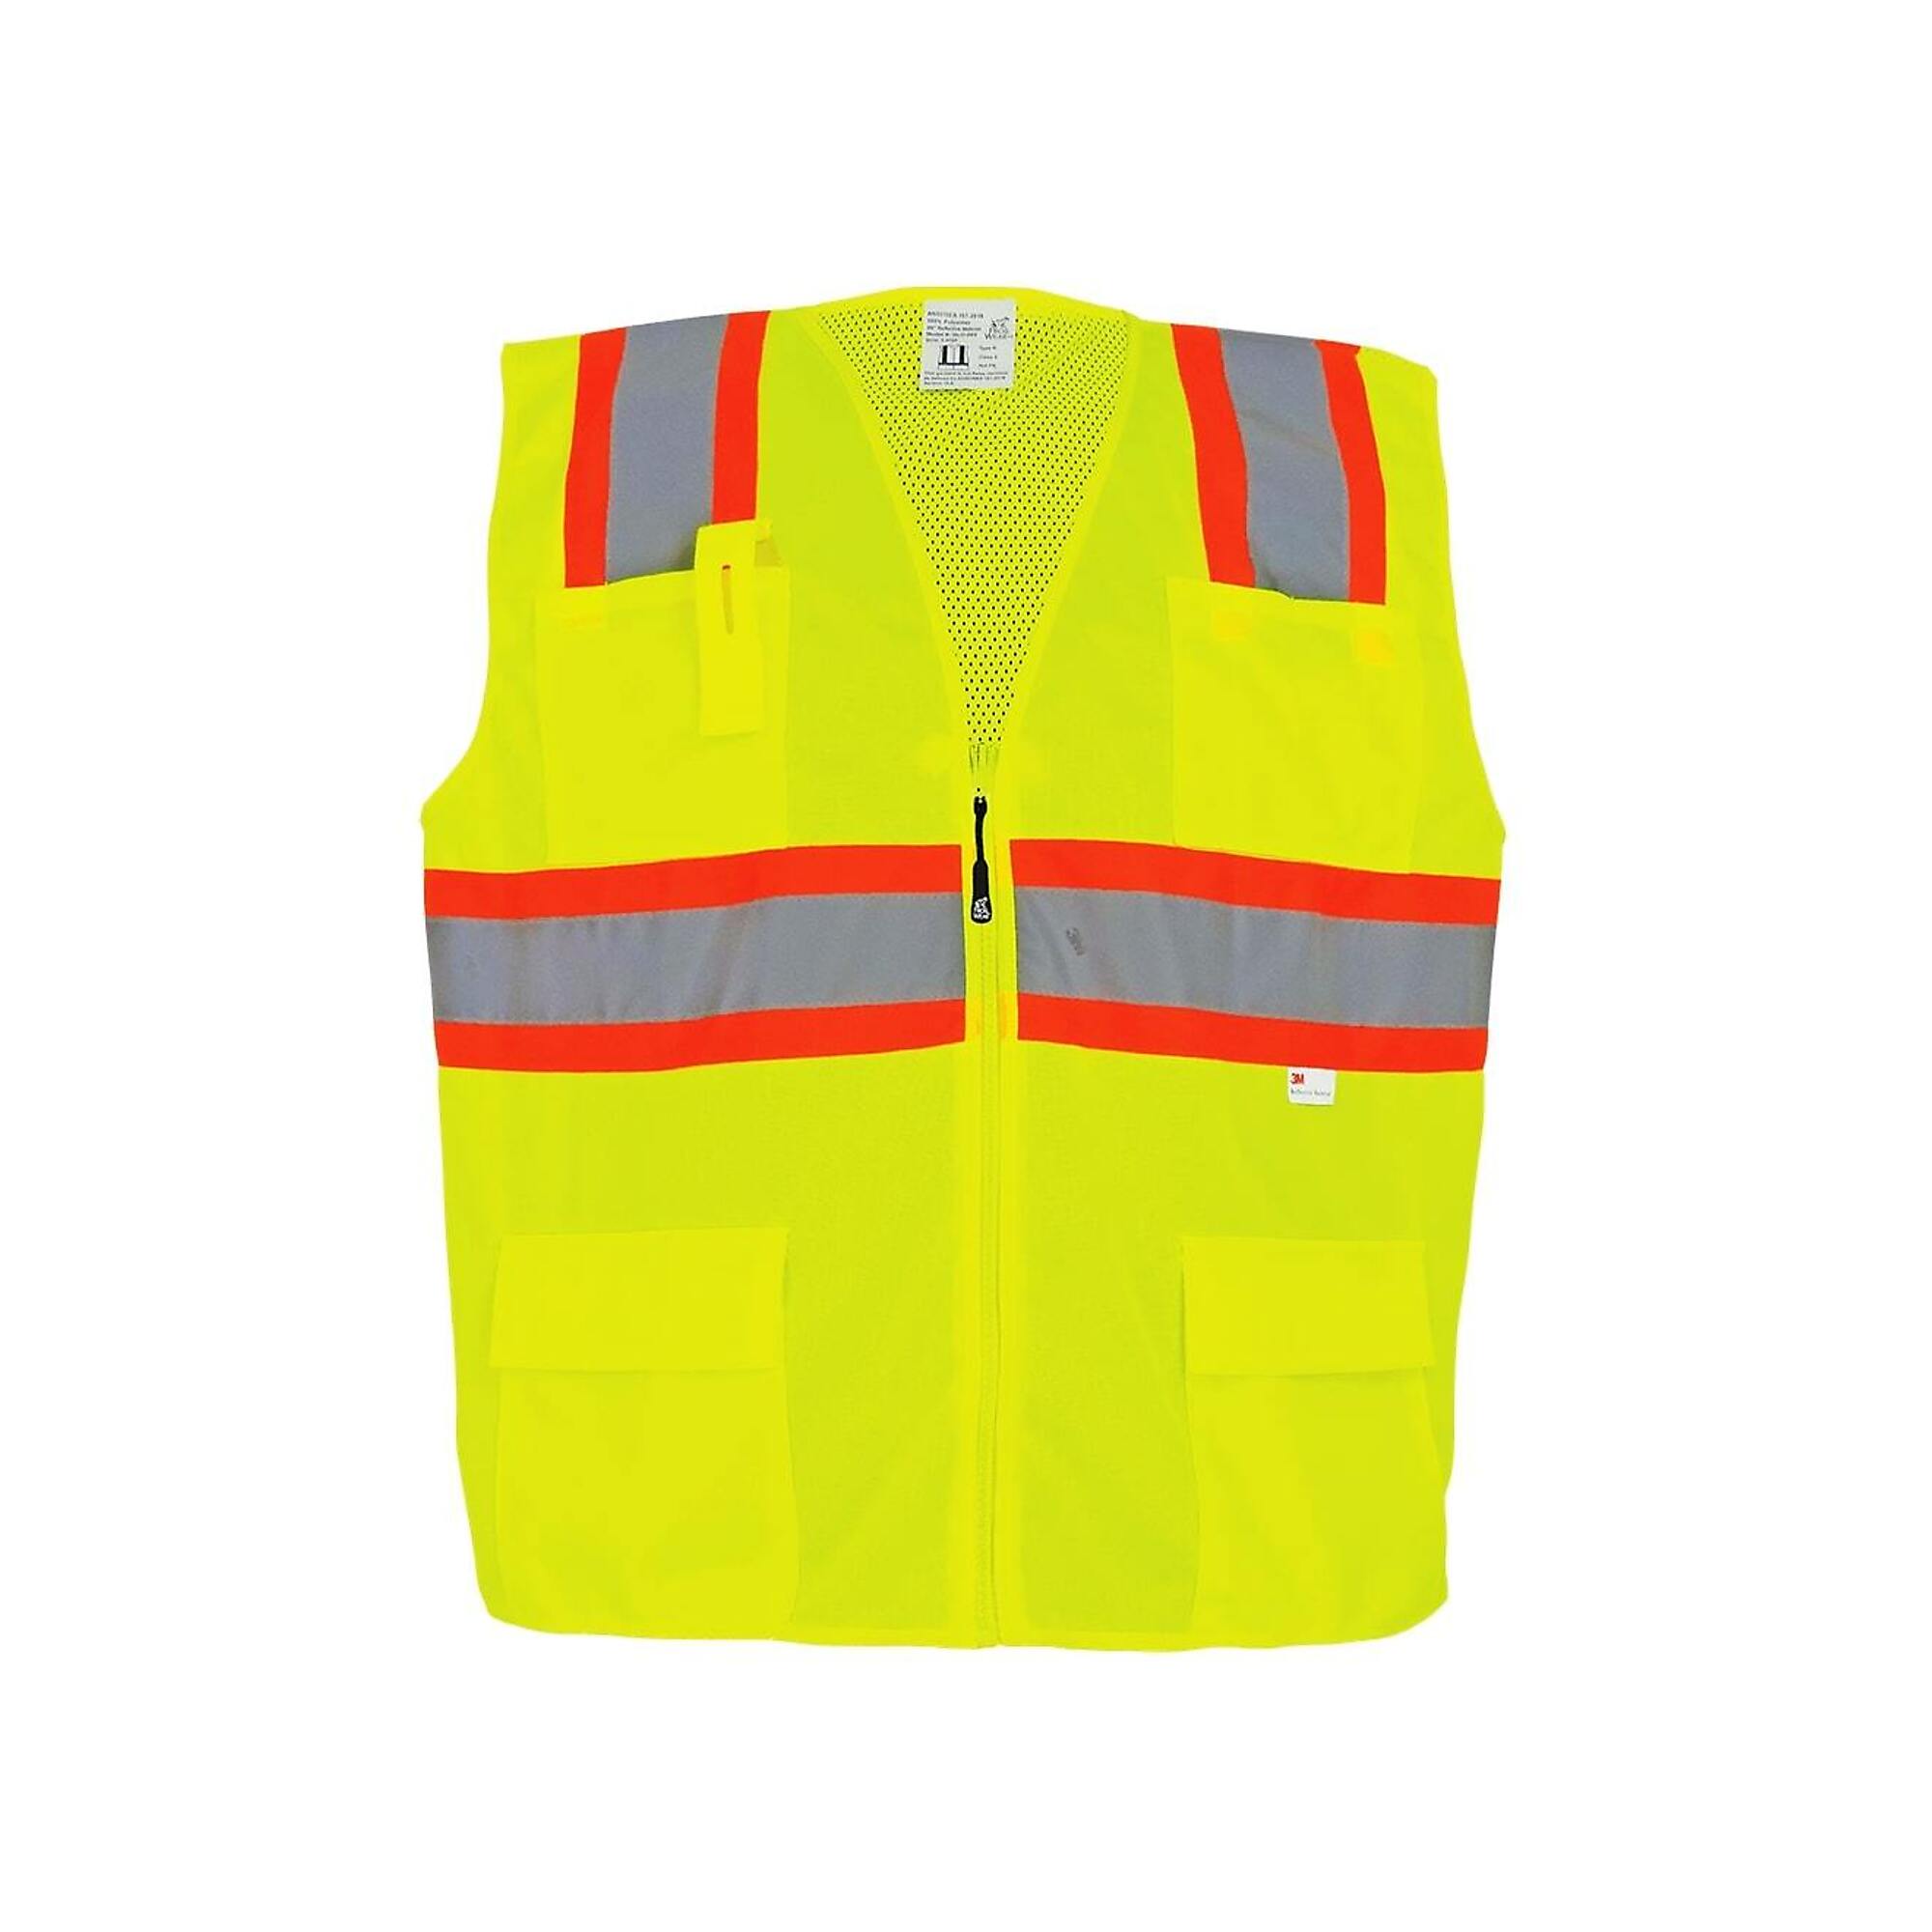 FrogWear Surveyors Vest, XL, Yellow, Model GLO-003-XL